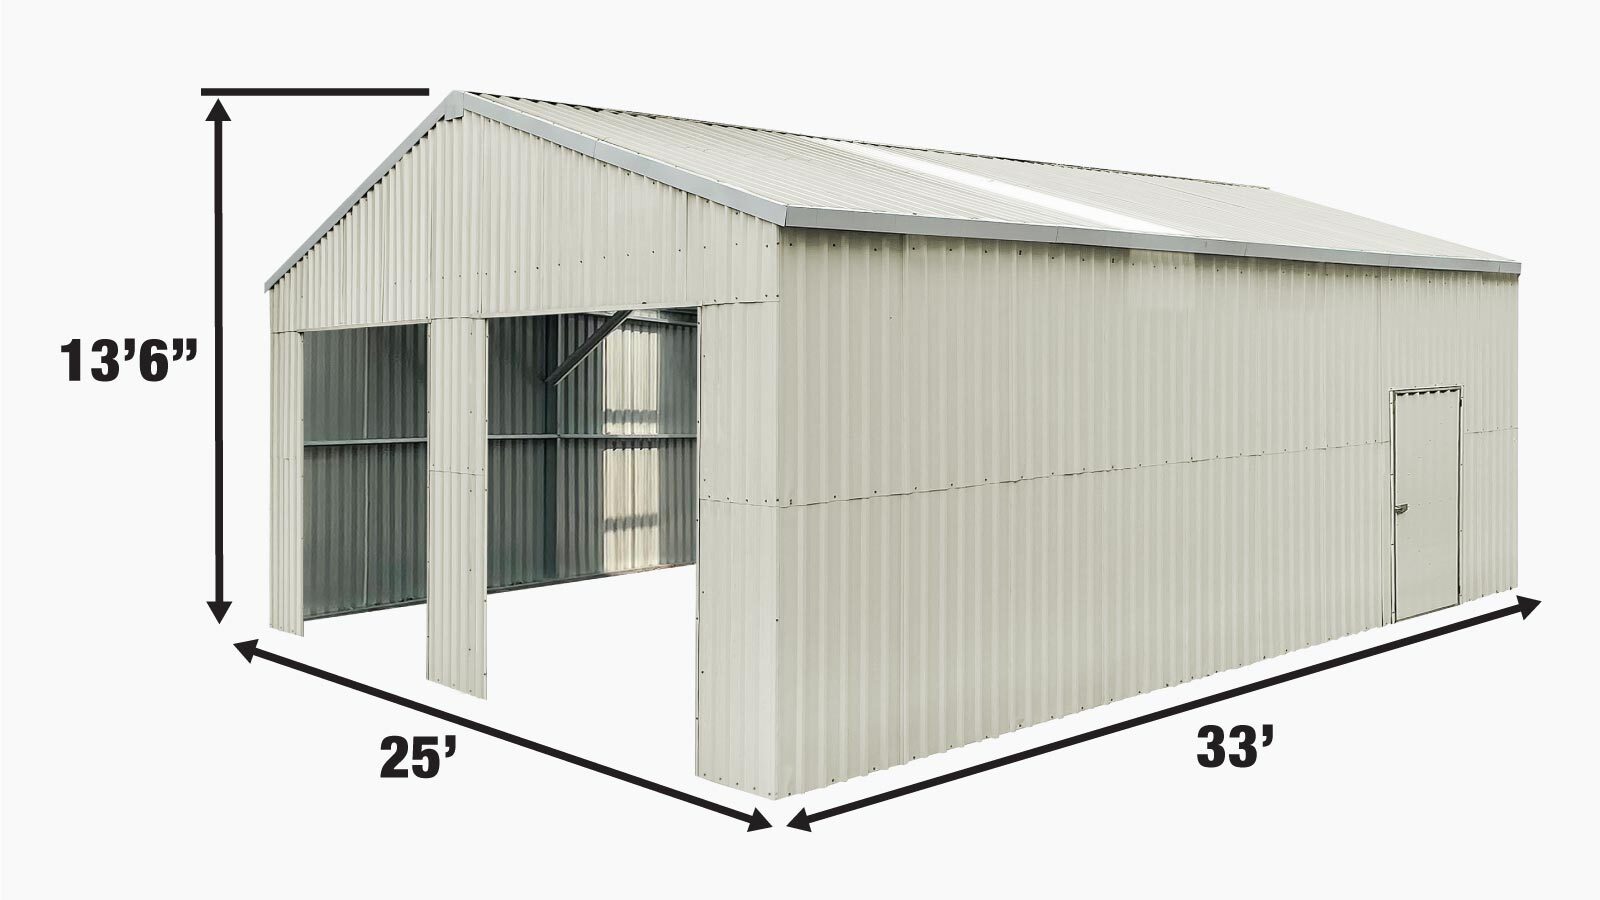 TMG Industrial 25' x 33' hangar métallique à double garage avec porte d'entrée latérale, 825 pi2 de surface de plancher, hauteur d'avant-toit de 9'8